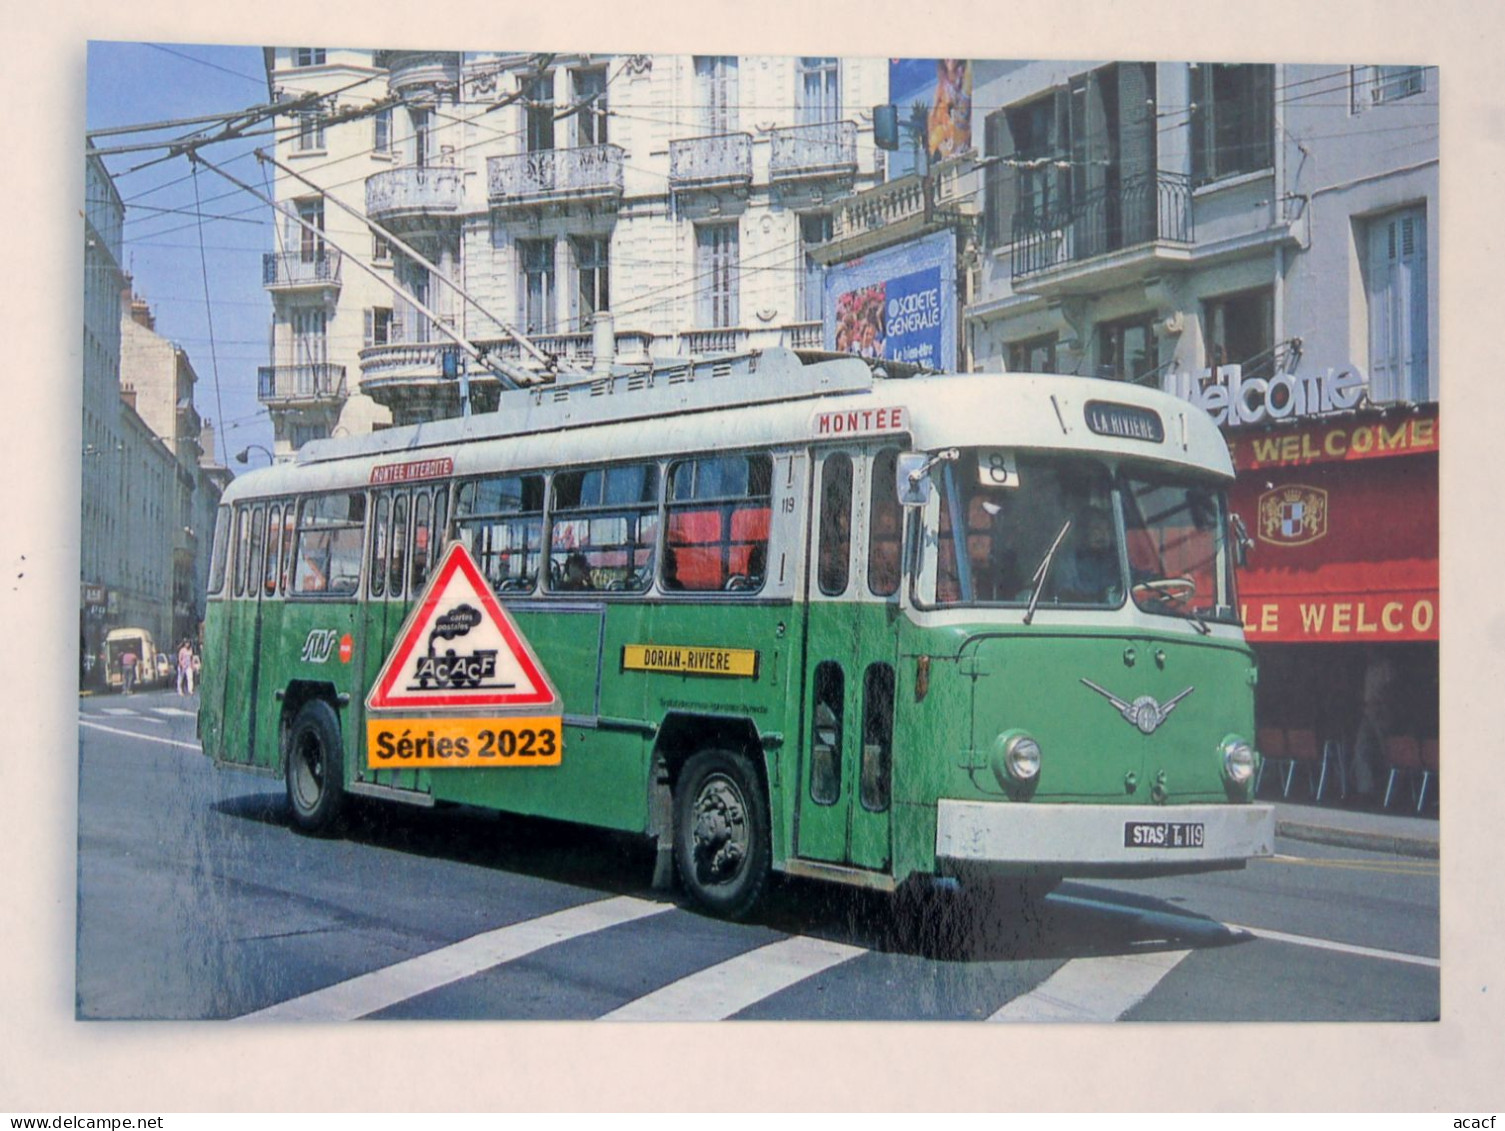 série thématique 20 CPM de trolleybus français  -